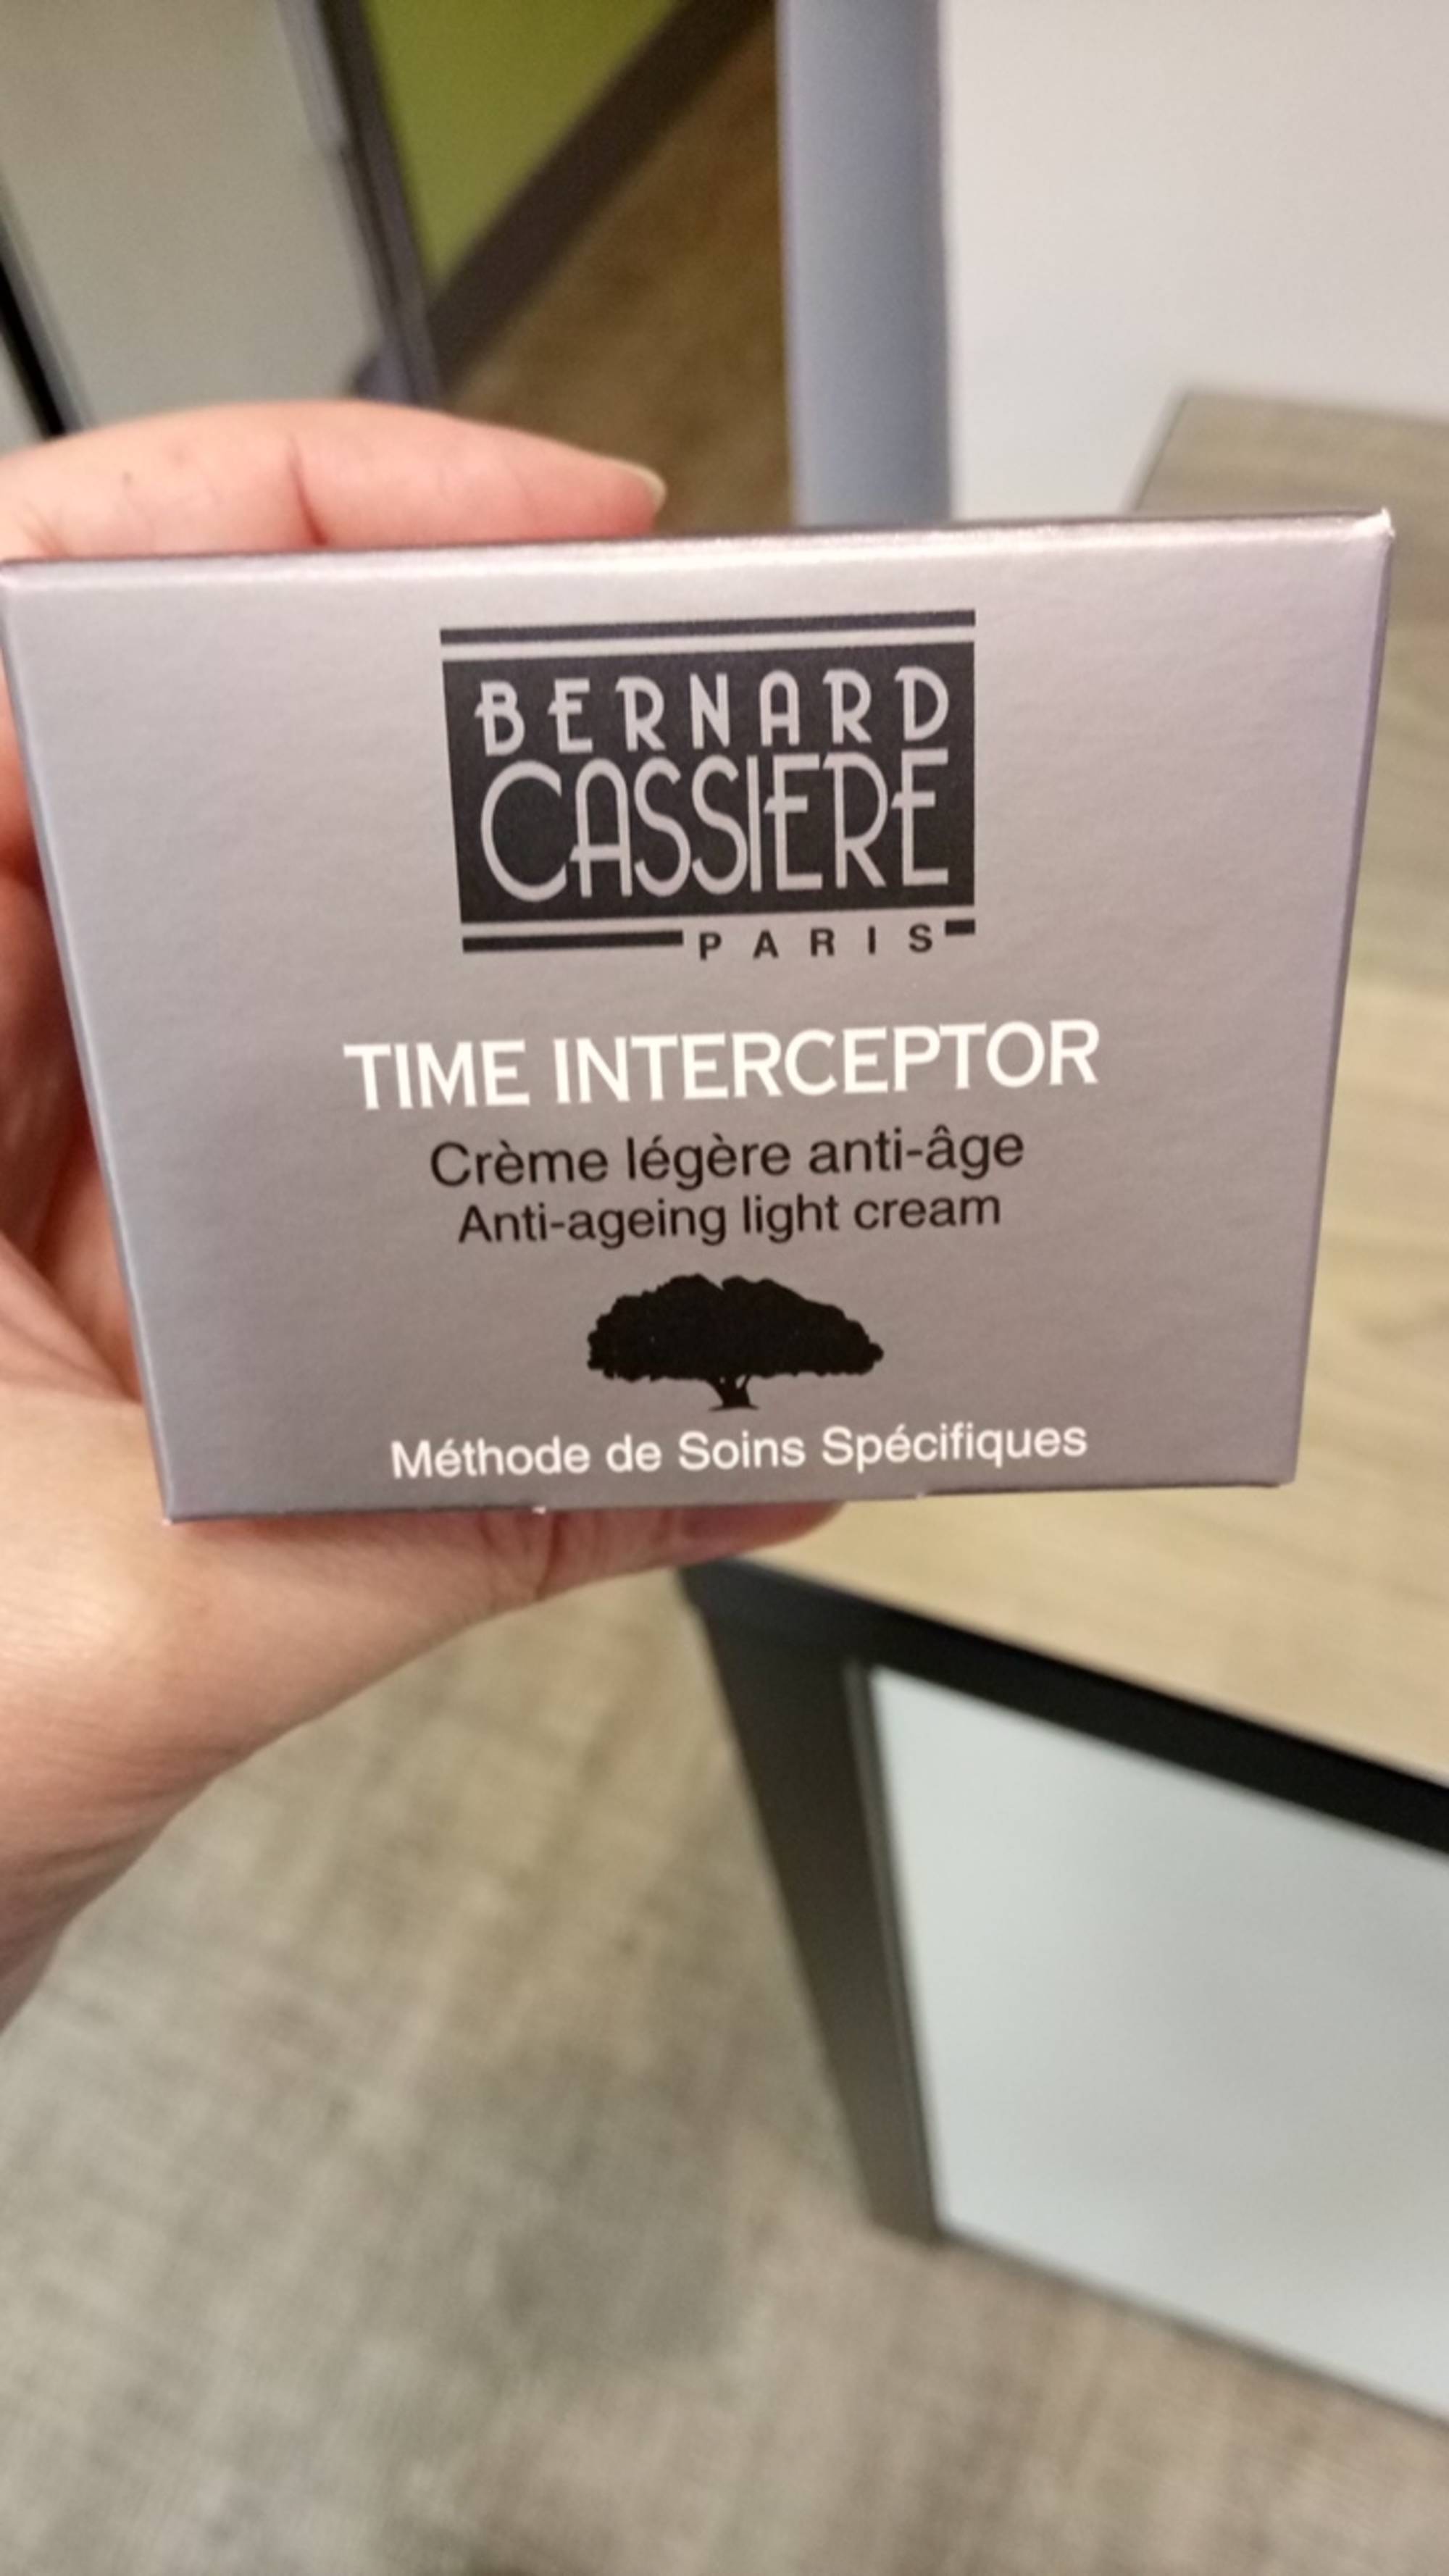 BERNARD CASSIÈRE PARIS - Time interceptor - Crème légère anti-âge